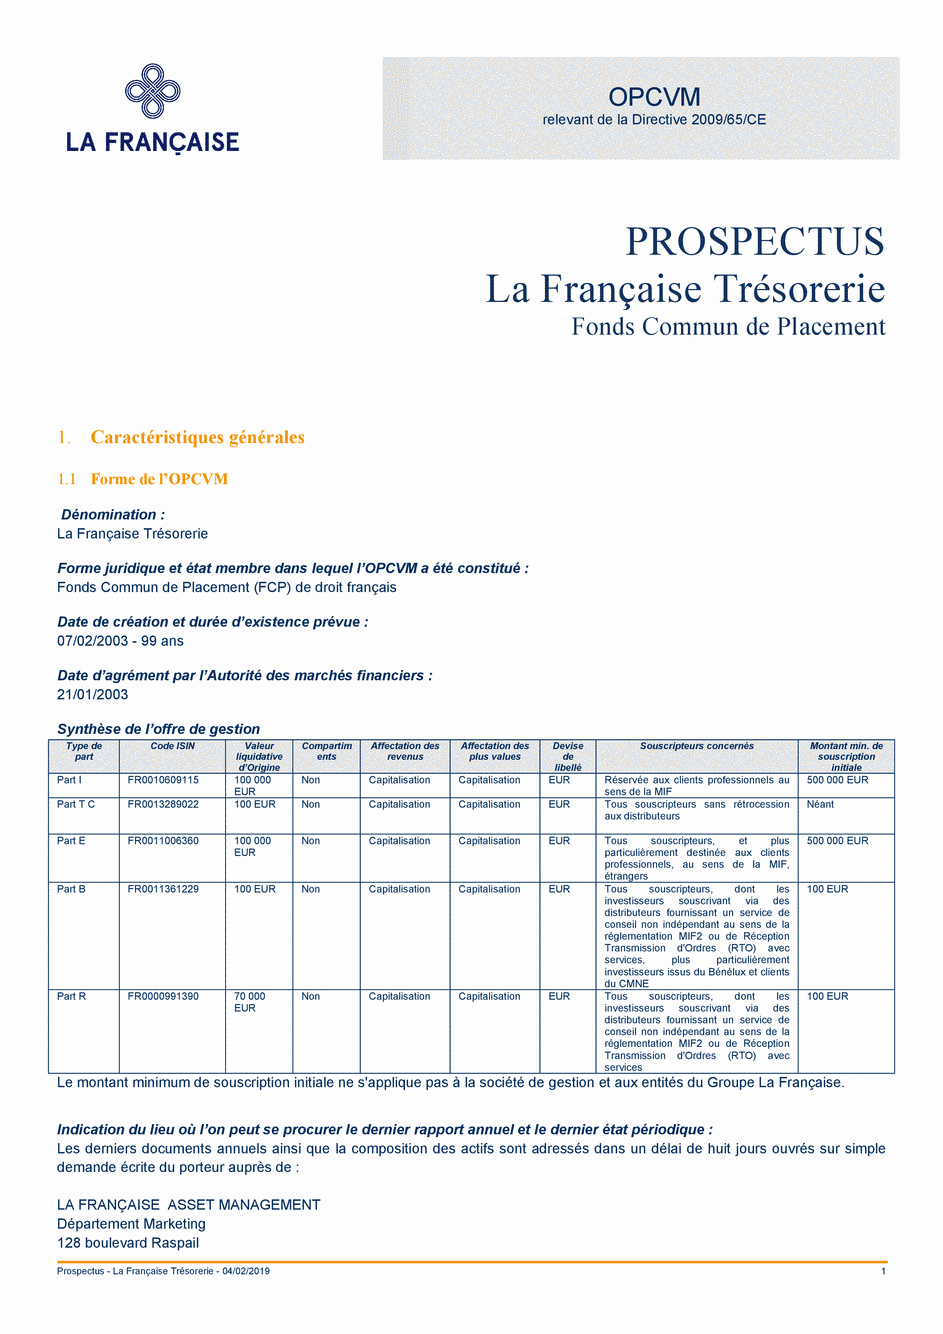 Prospectus La Française Trésorerie - Part E - 04/02/2019 - French